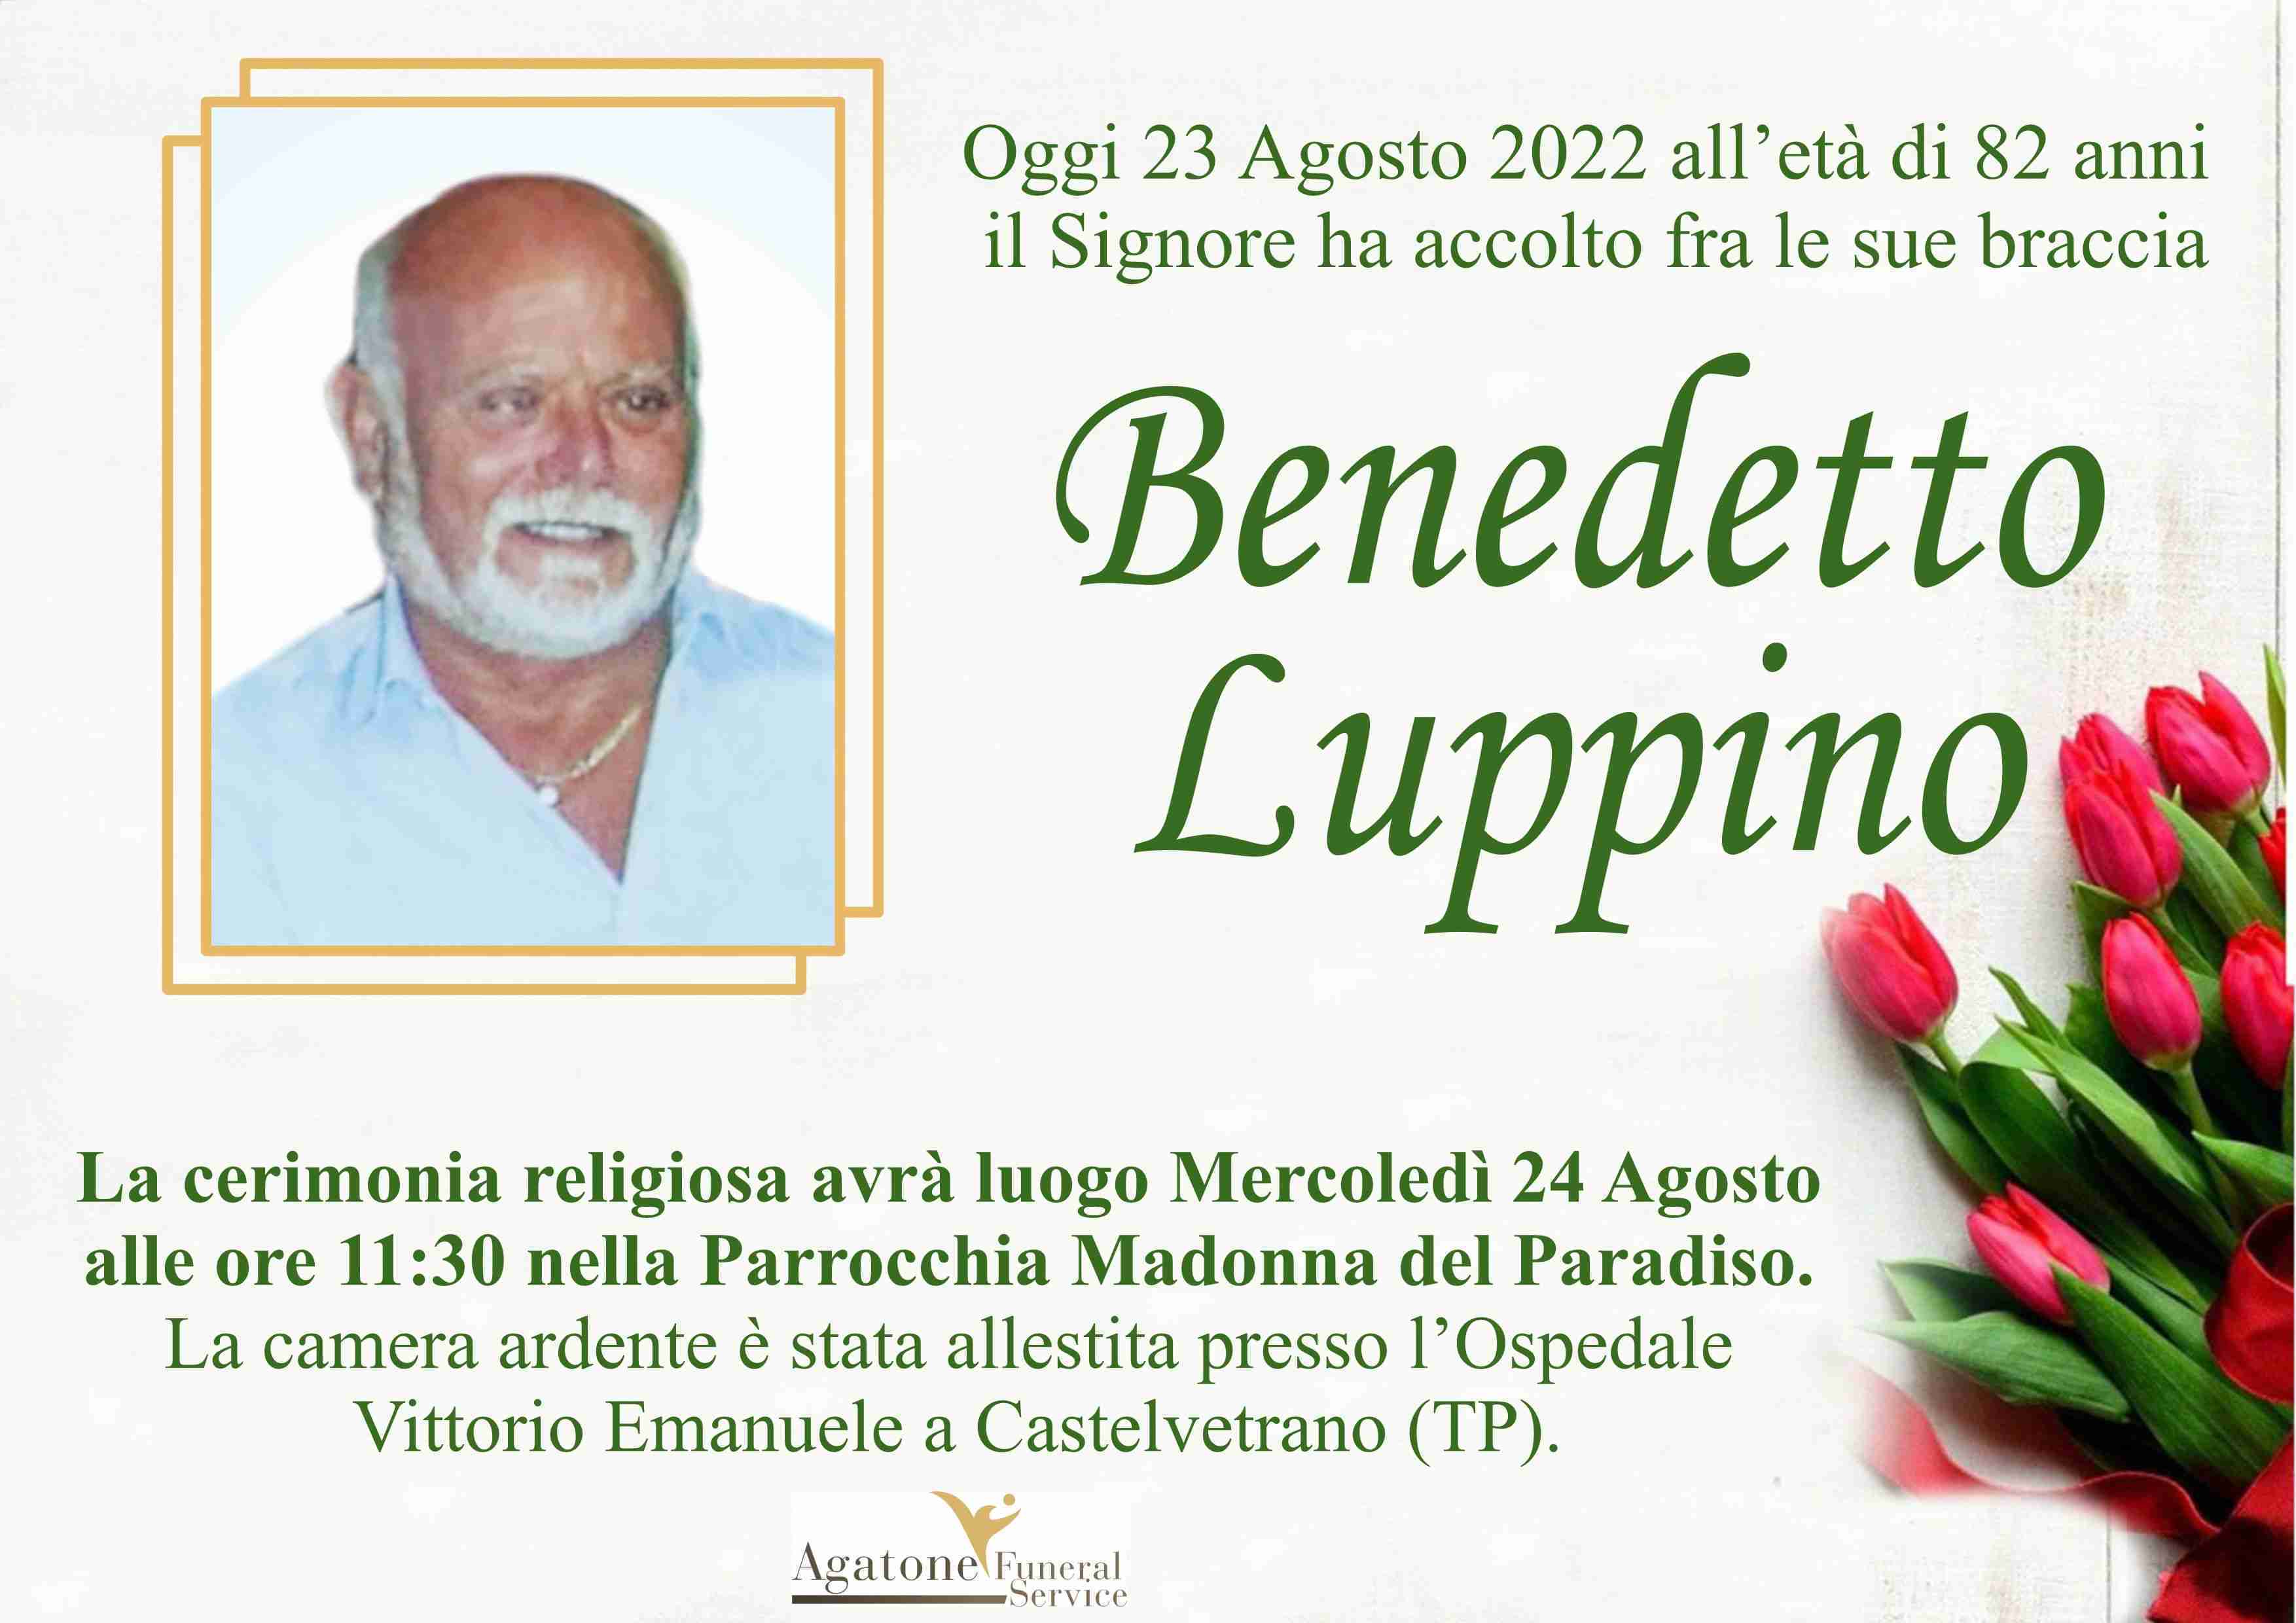 Benedetto Luppino